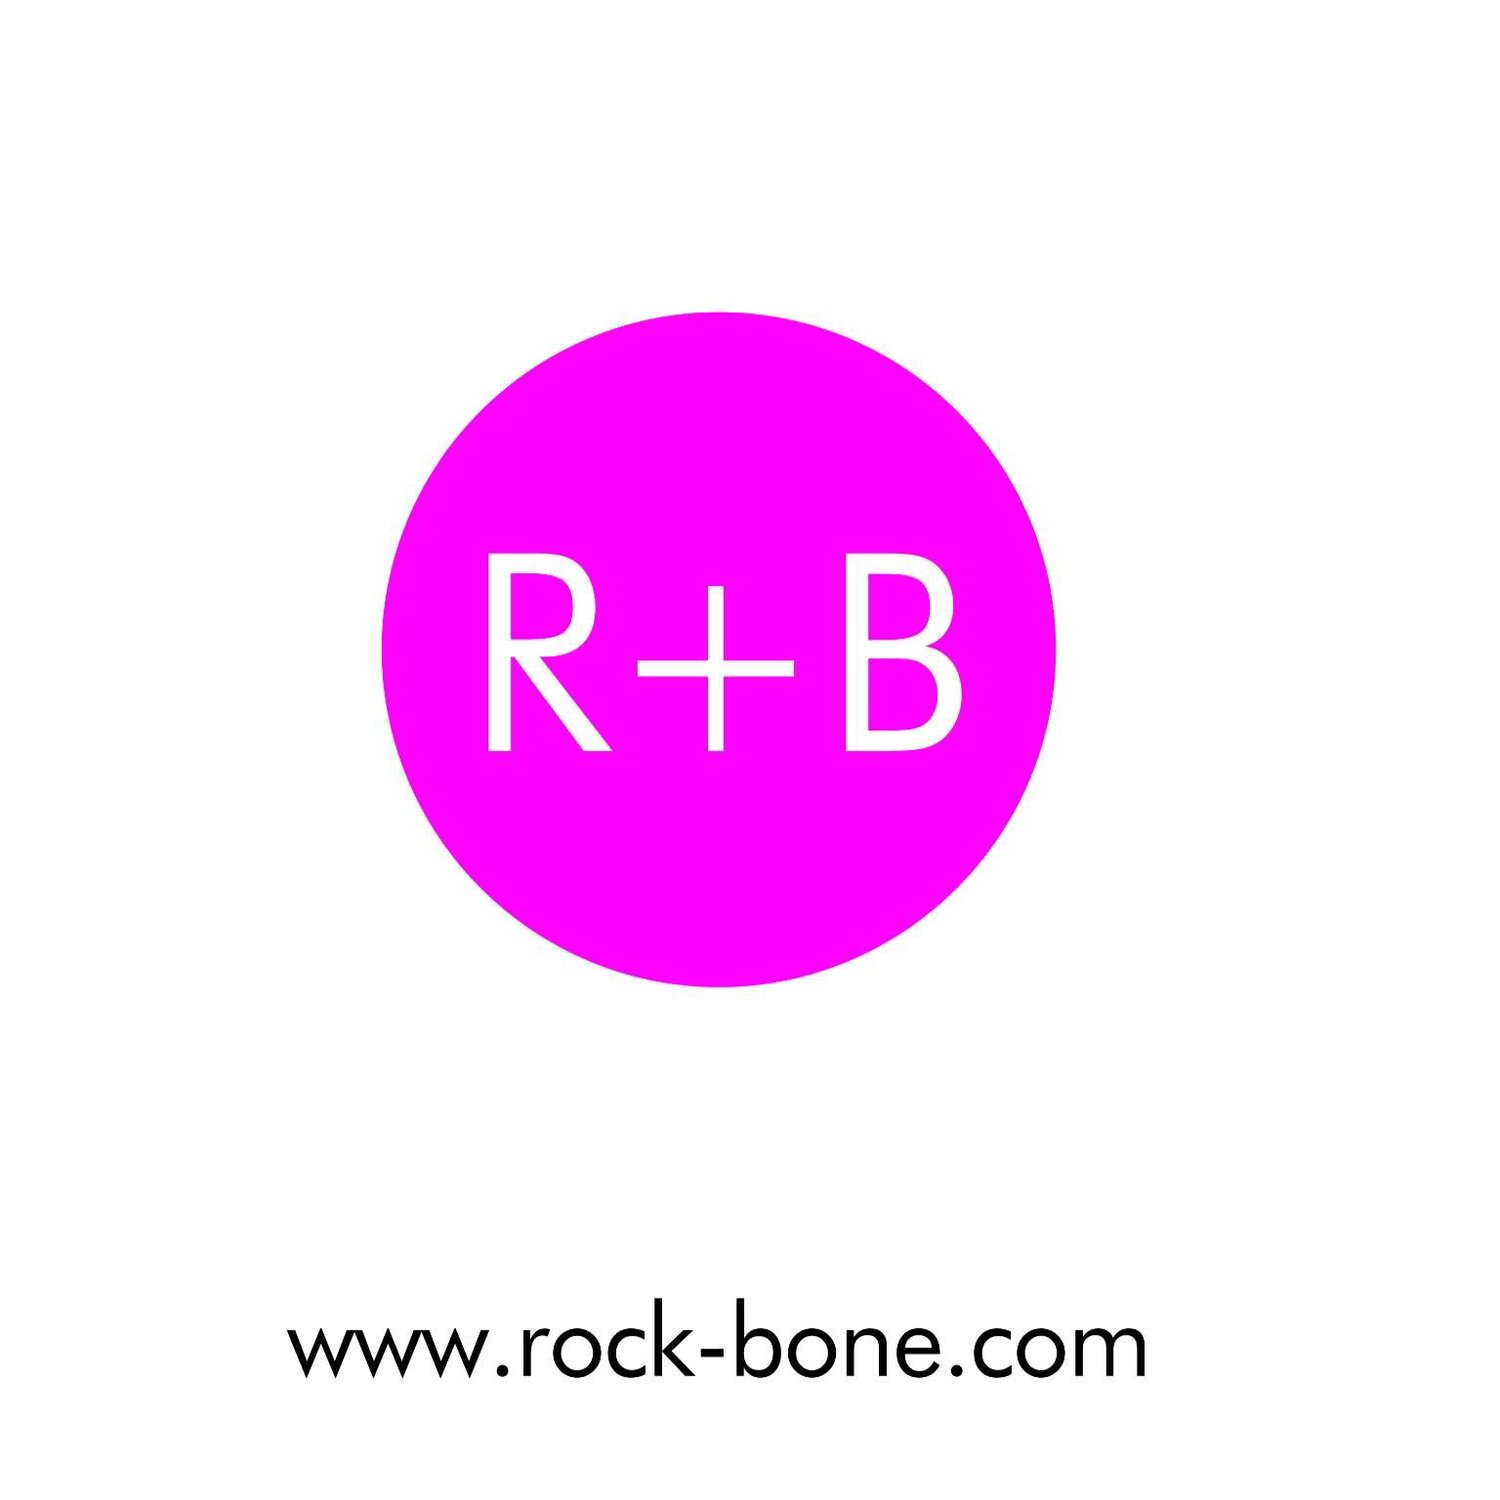 Rock bone mobile logo